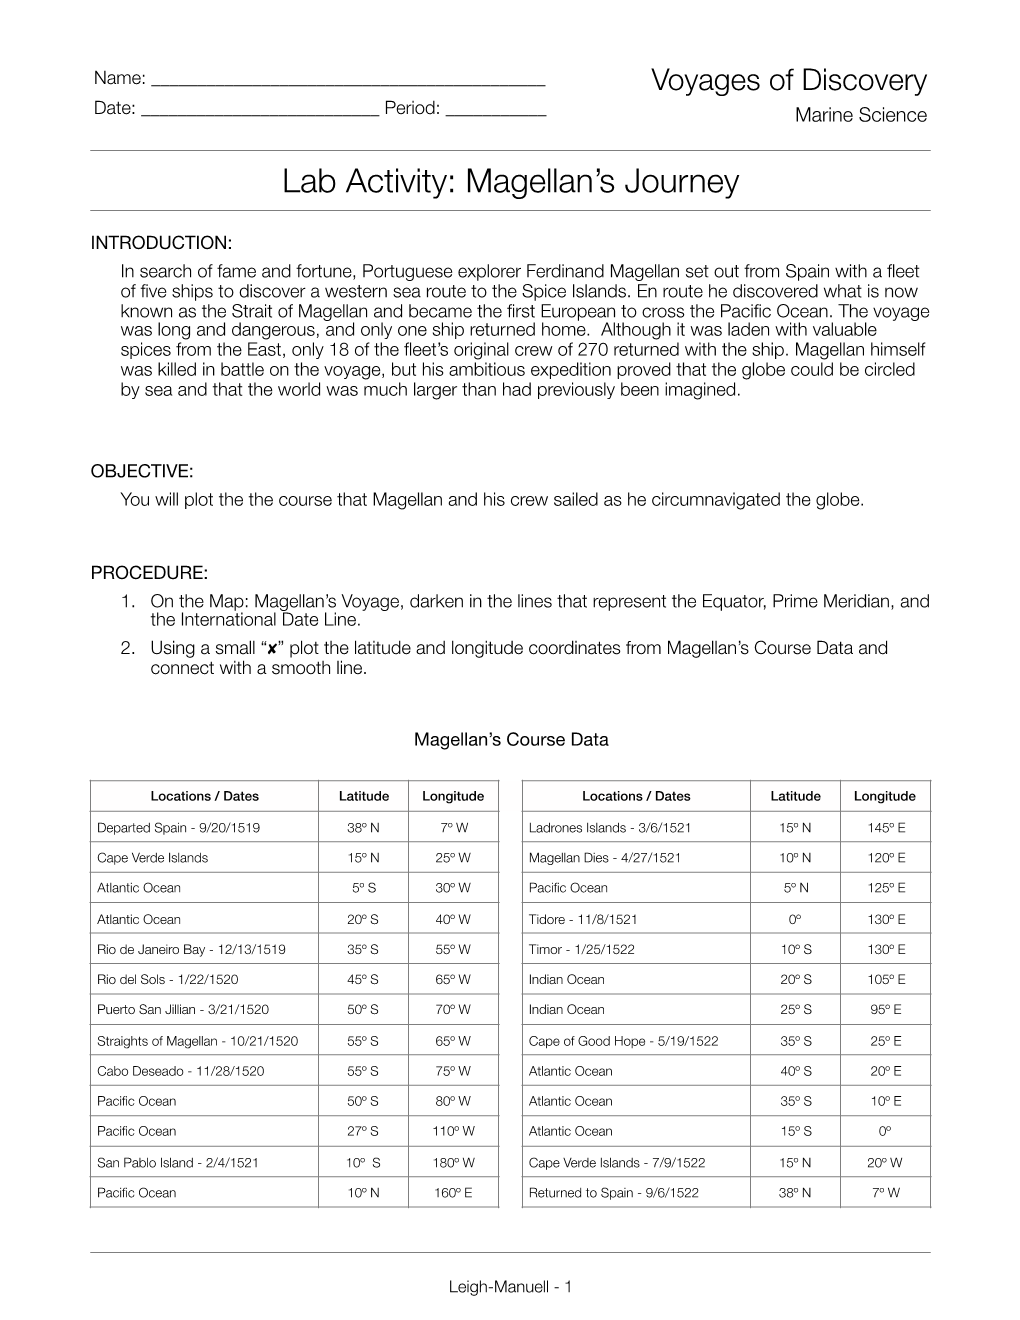 Lab Activity: Magellan's Voyage